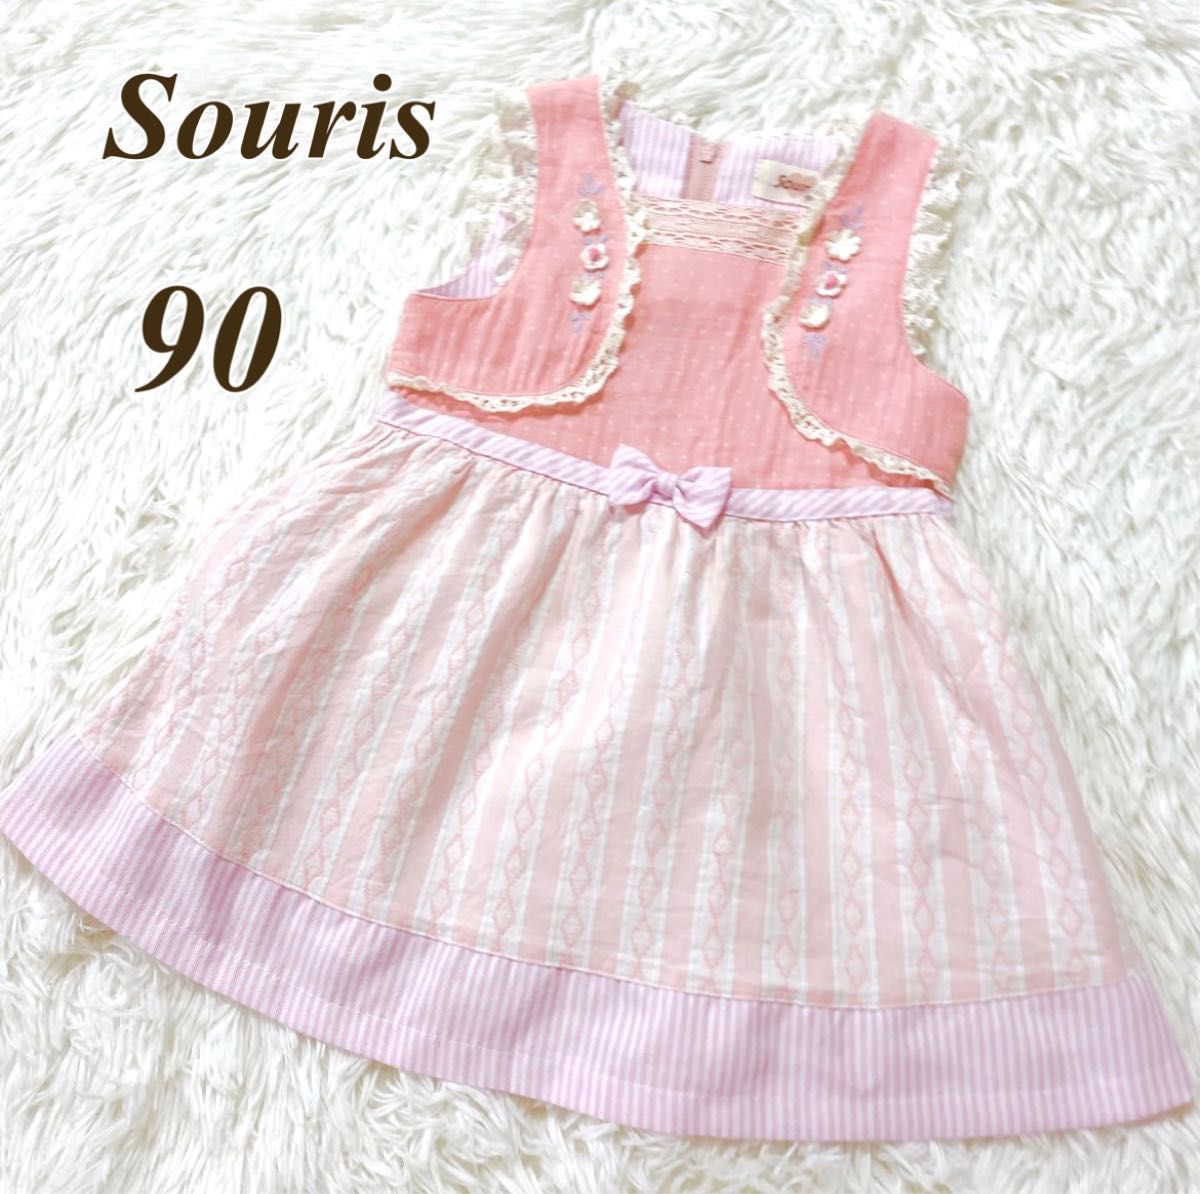 souris 90 ワンピース ミルキースーツ 女の子 夏服 子供服 スーリー ピンク ジャンパースカート キッズ ノースリーブの画像1